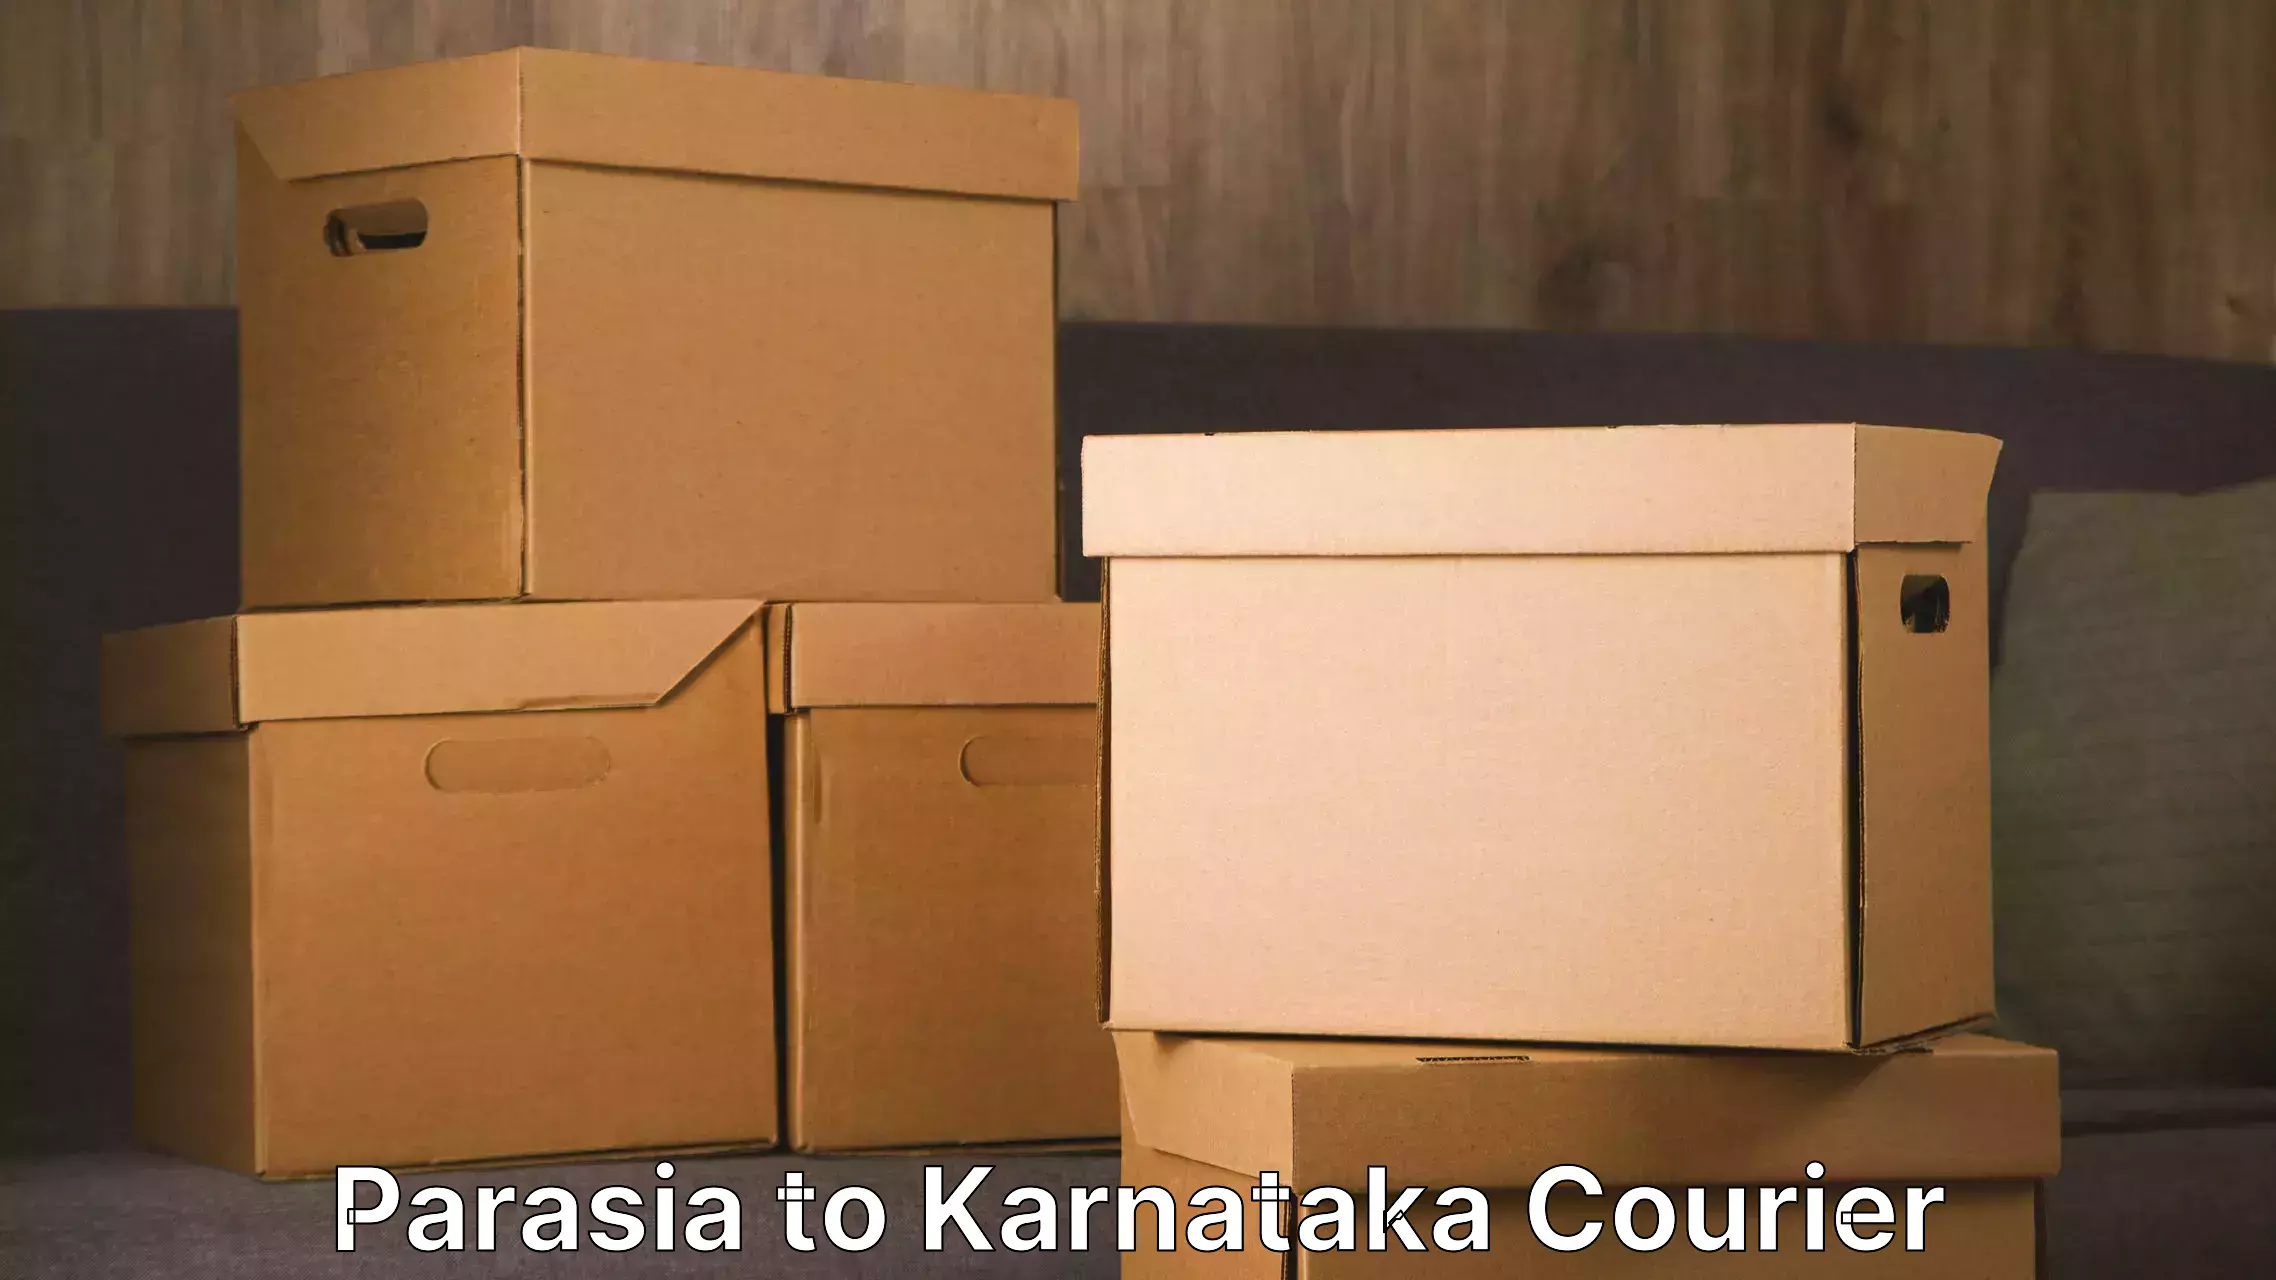 Moving and storage services in Parasia to Basavana Bagewadi